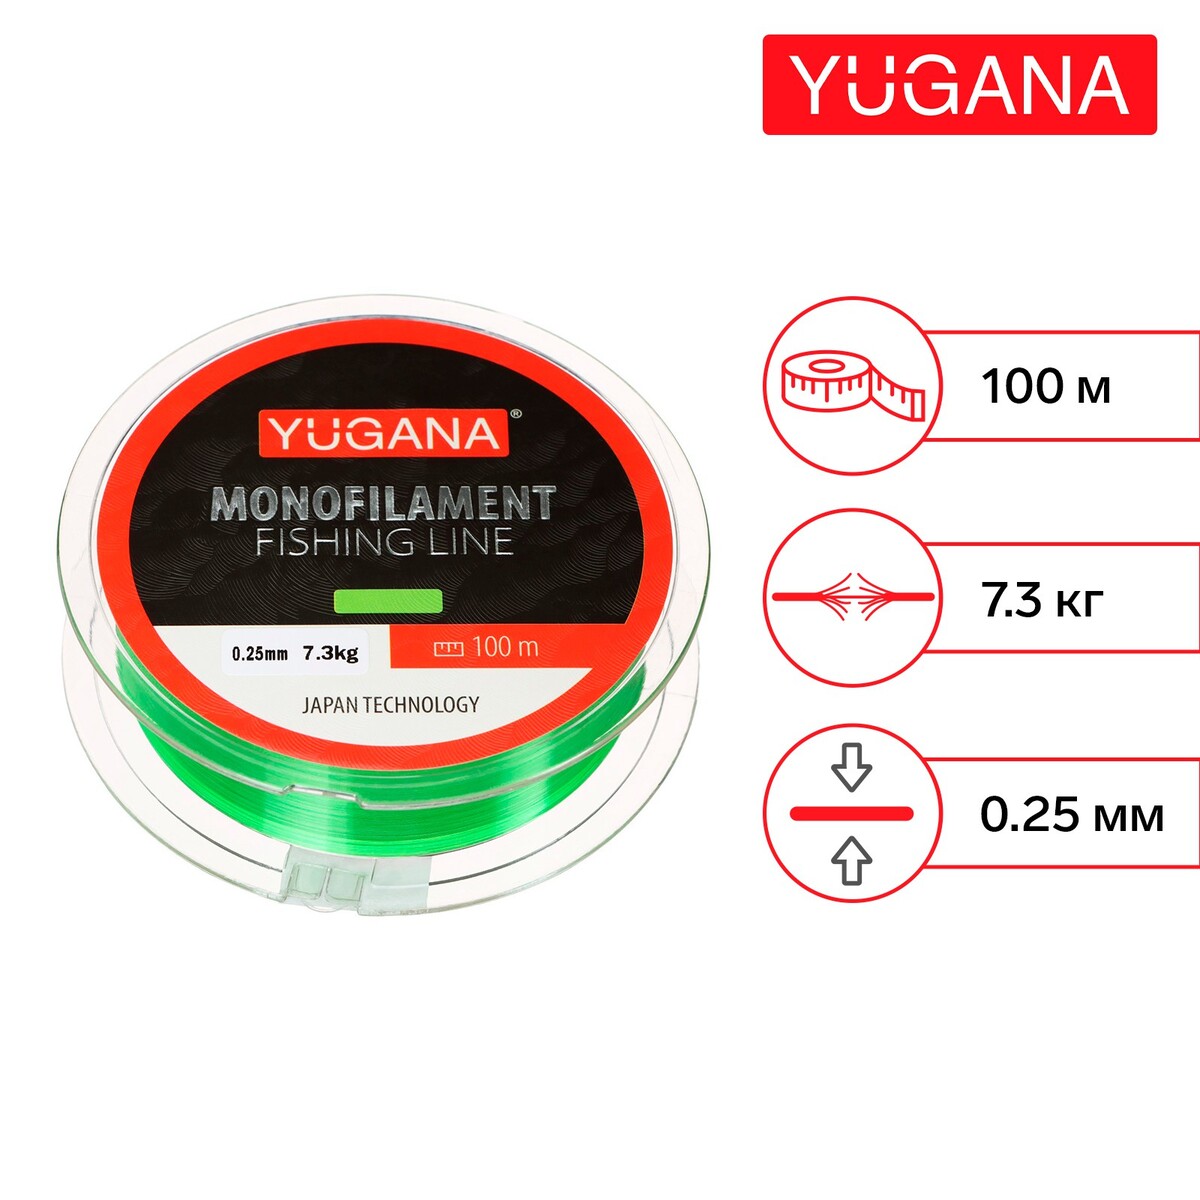 Леска монофильная yugana, диаметр 0.25 мм, тест 7.3 кг, 100 м, зеленая